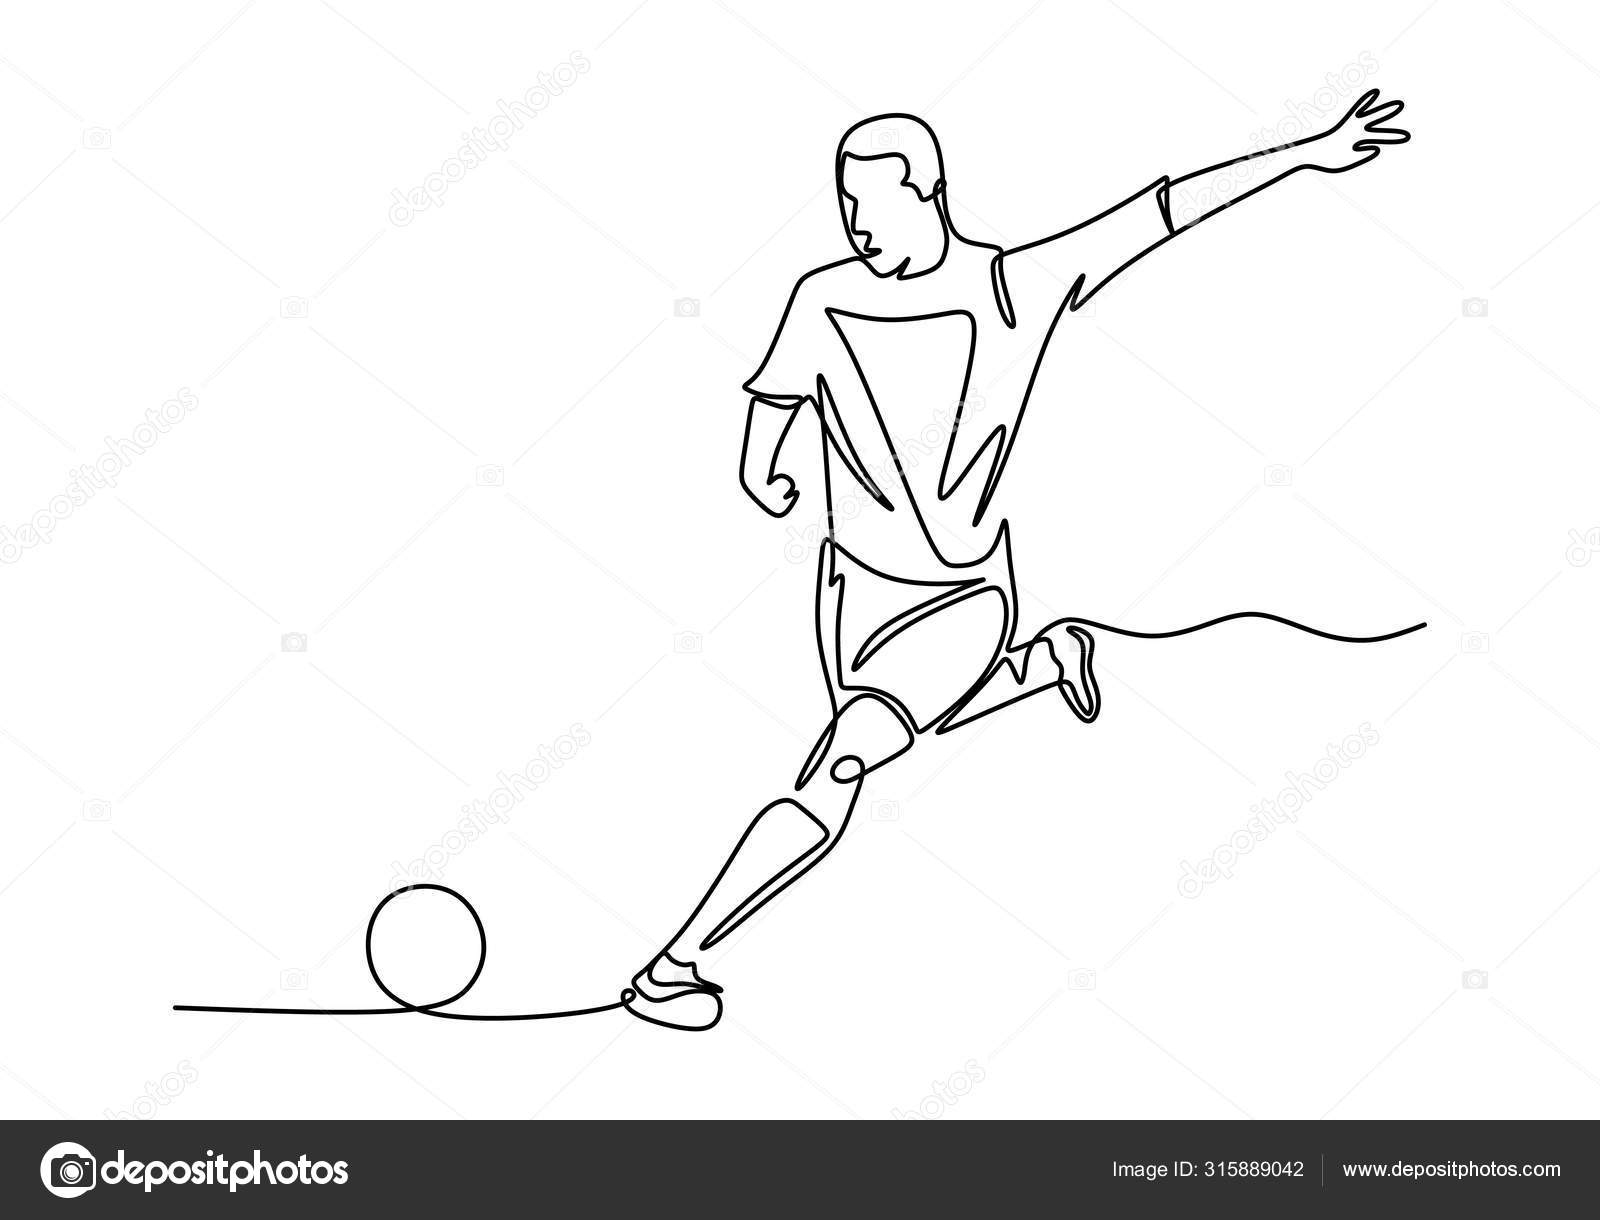 Um desenho de linha de um jovem atacante de futebol enérgico faz